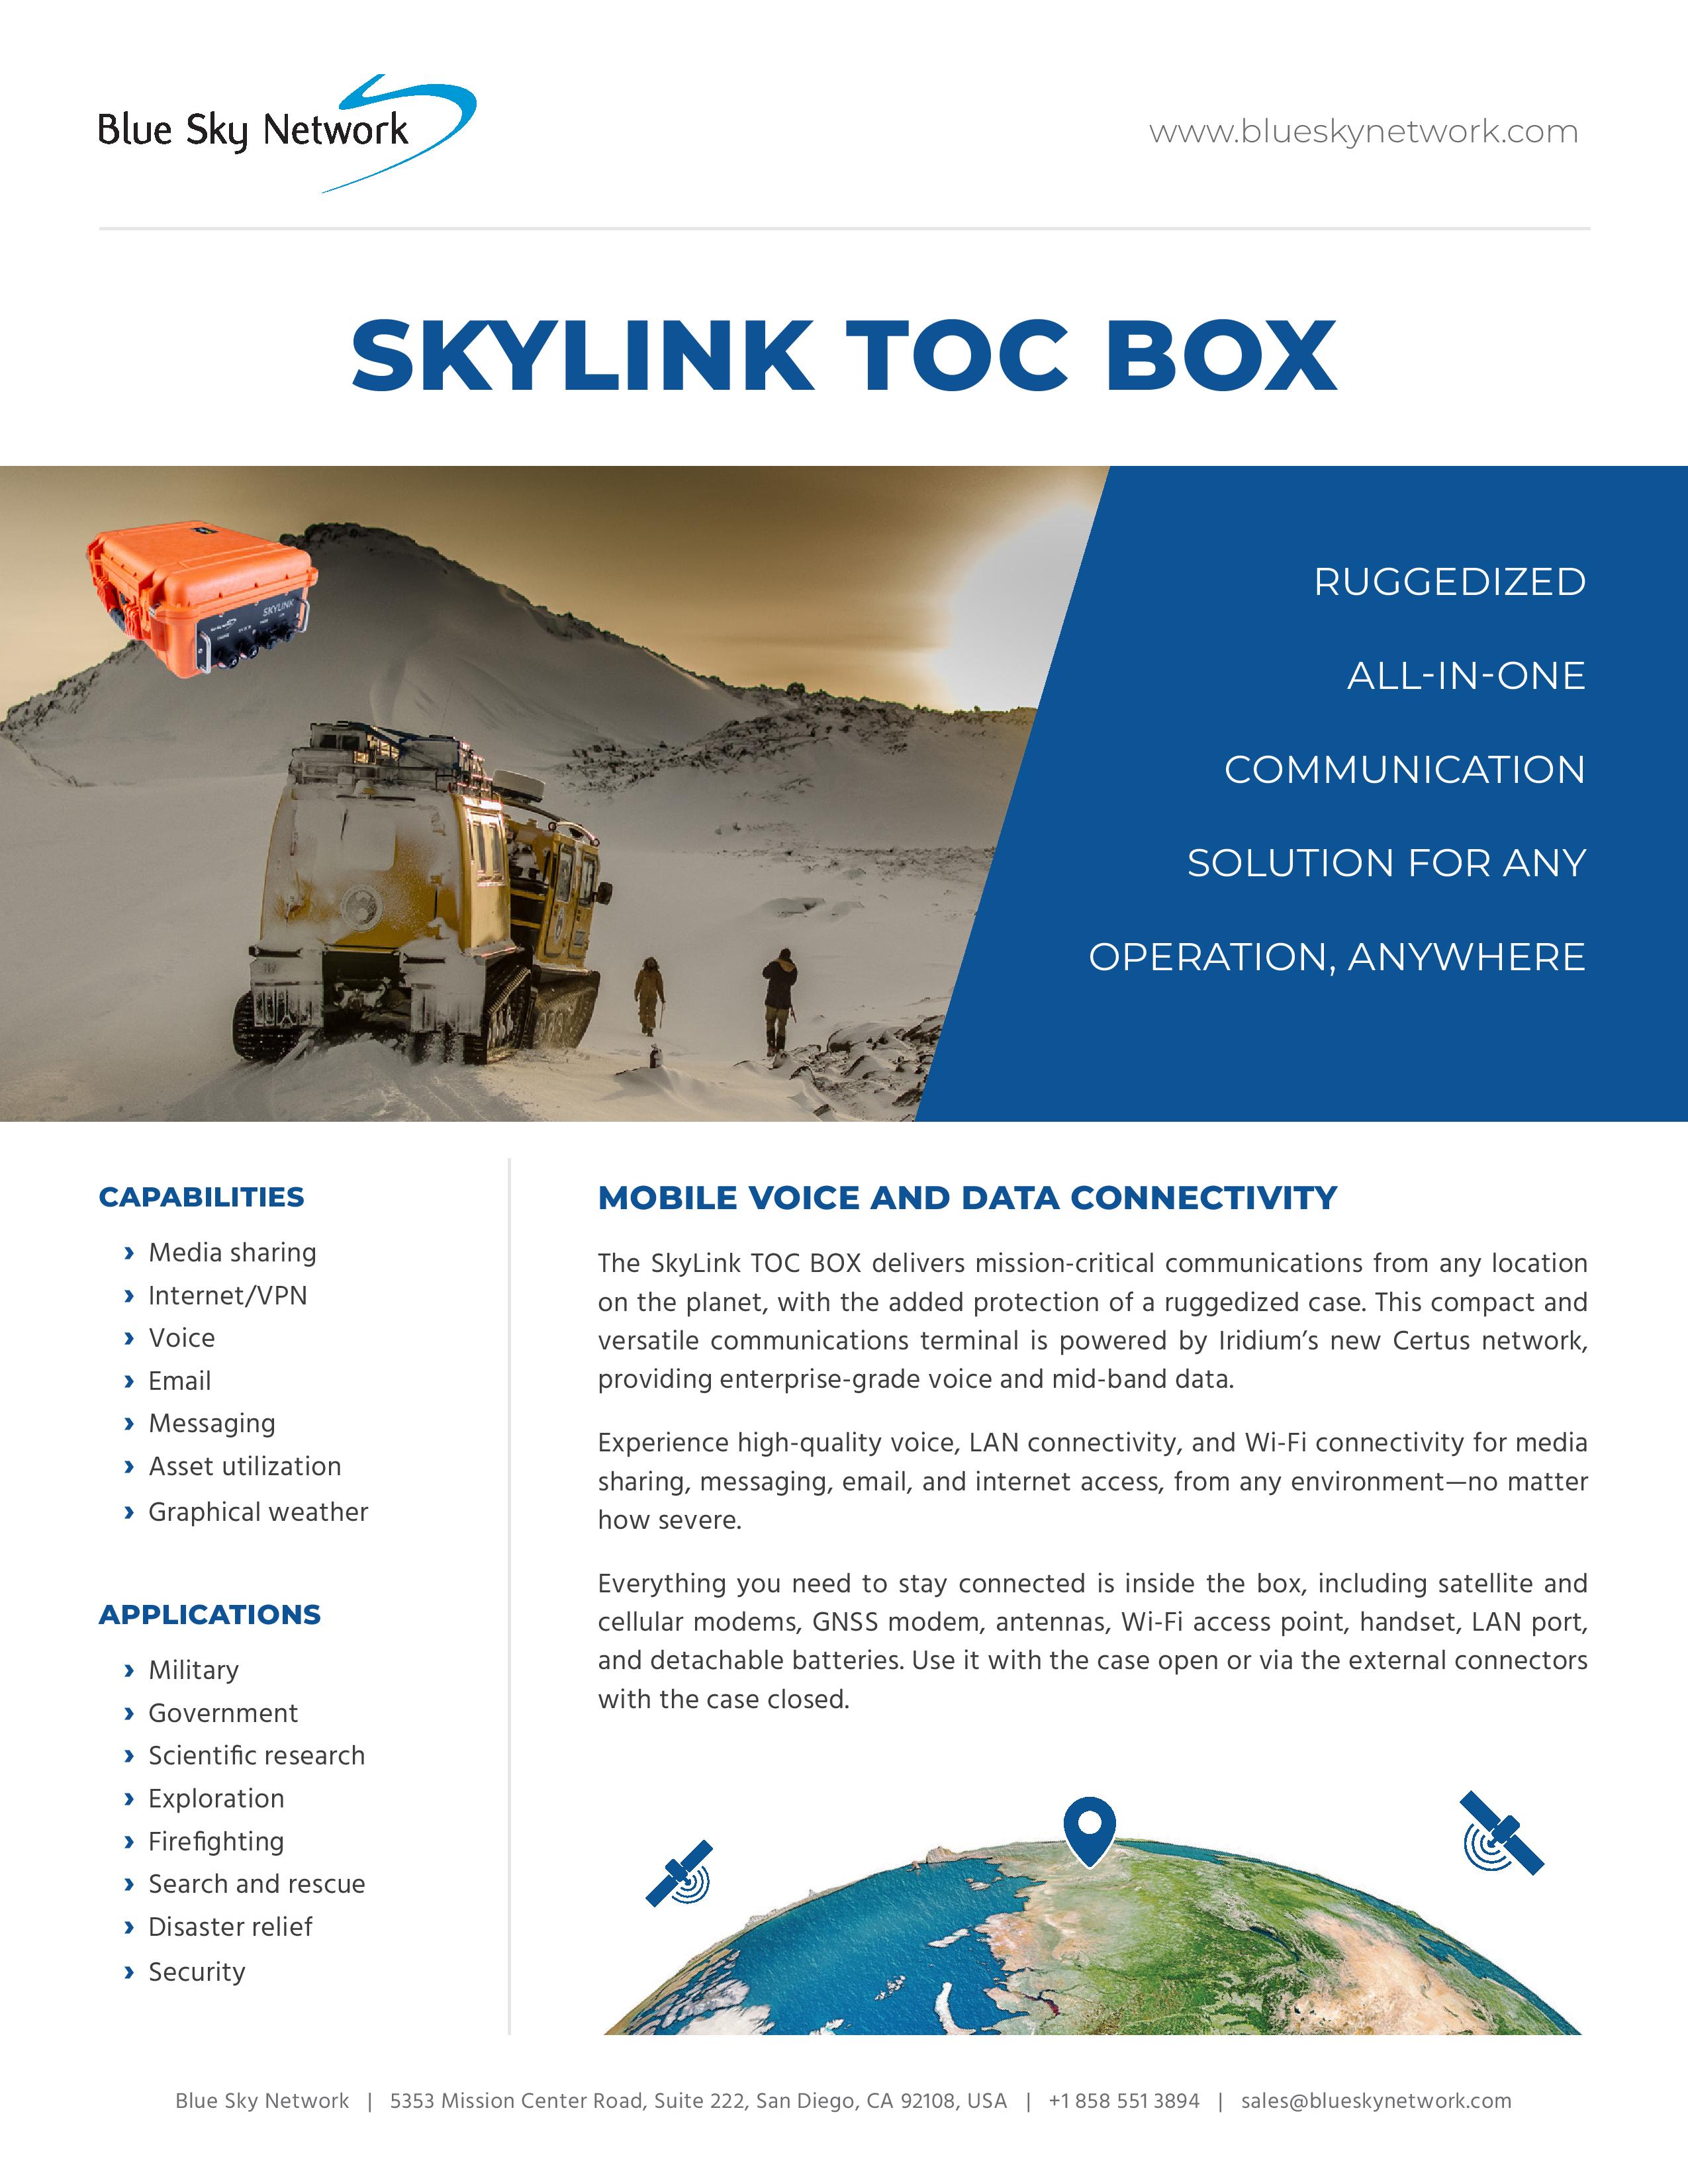 SkyLink-TOC-BOX-Brochure-EN-V1.1-page-001.jpg